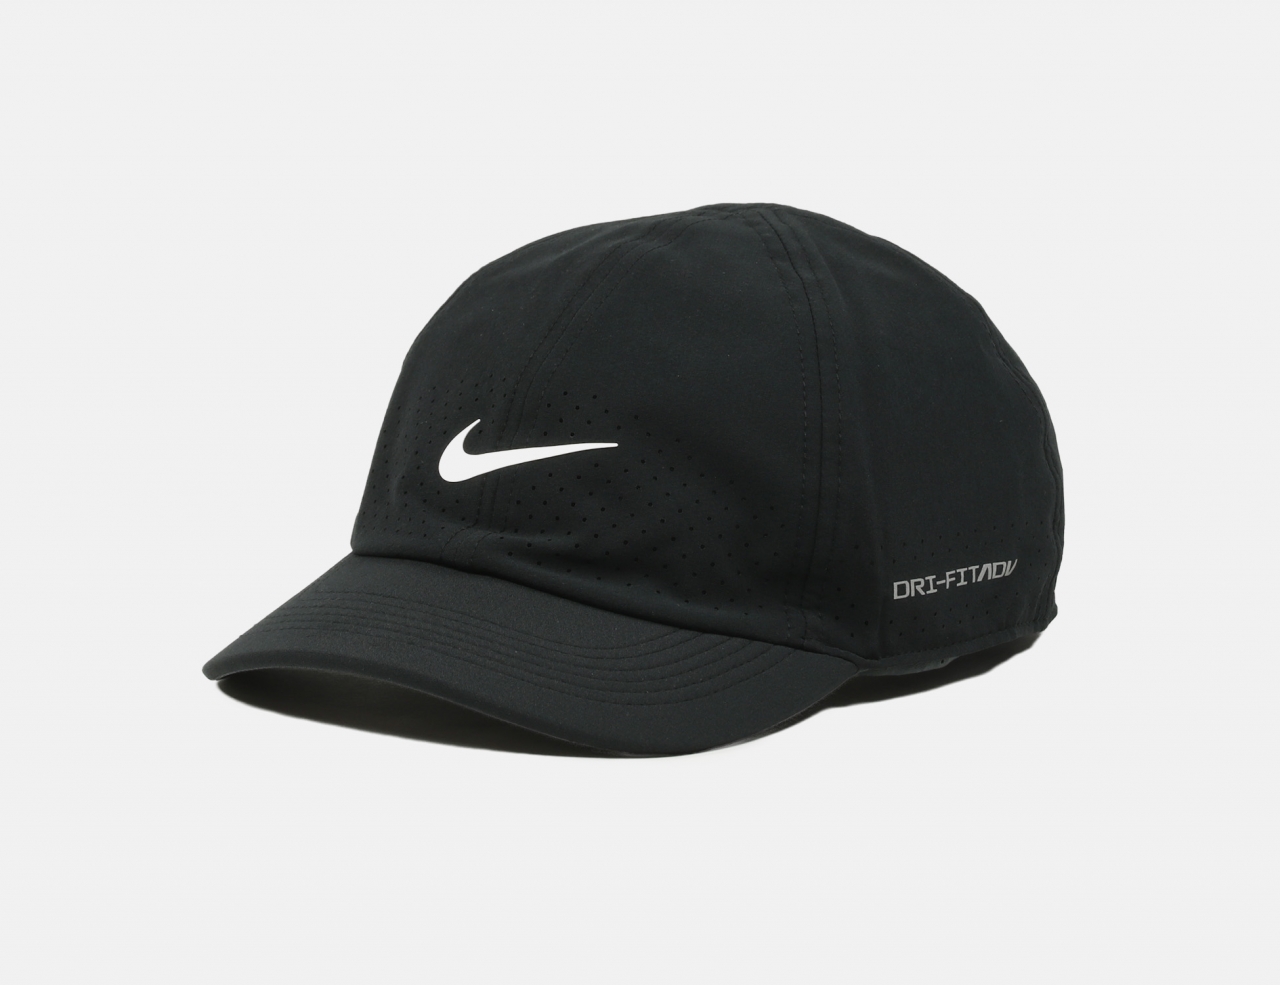 Nike SB UN DK DFADV Tennis Cap - Black / White